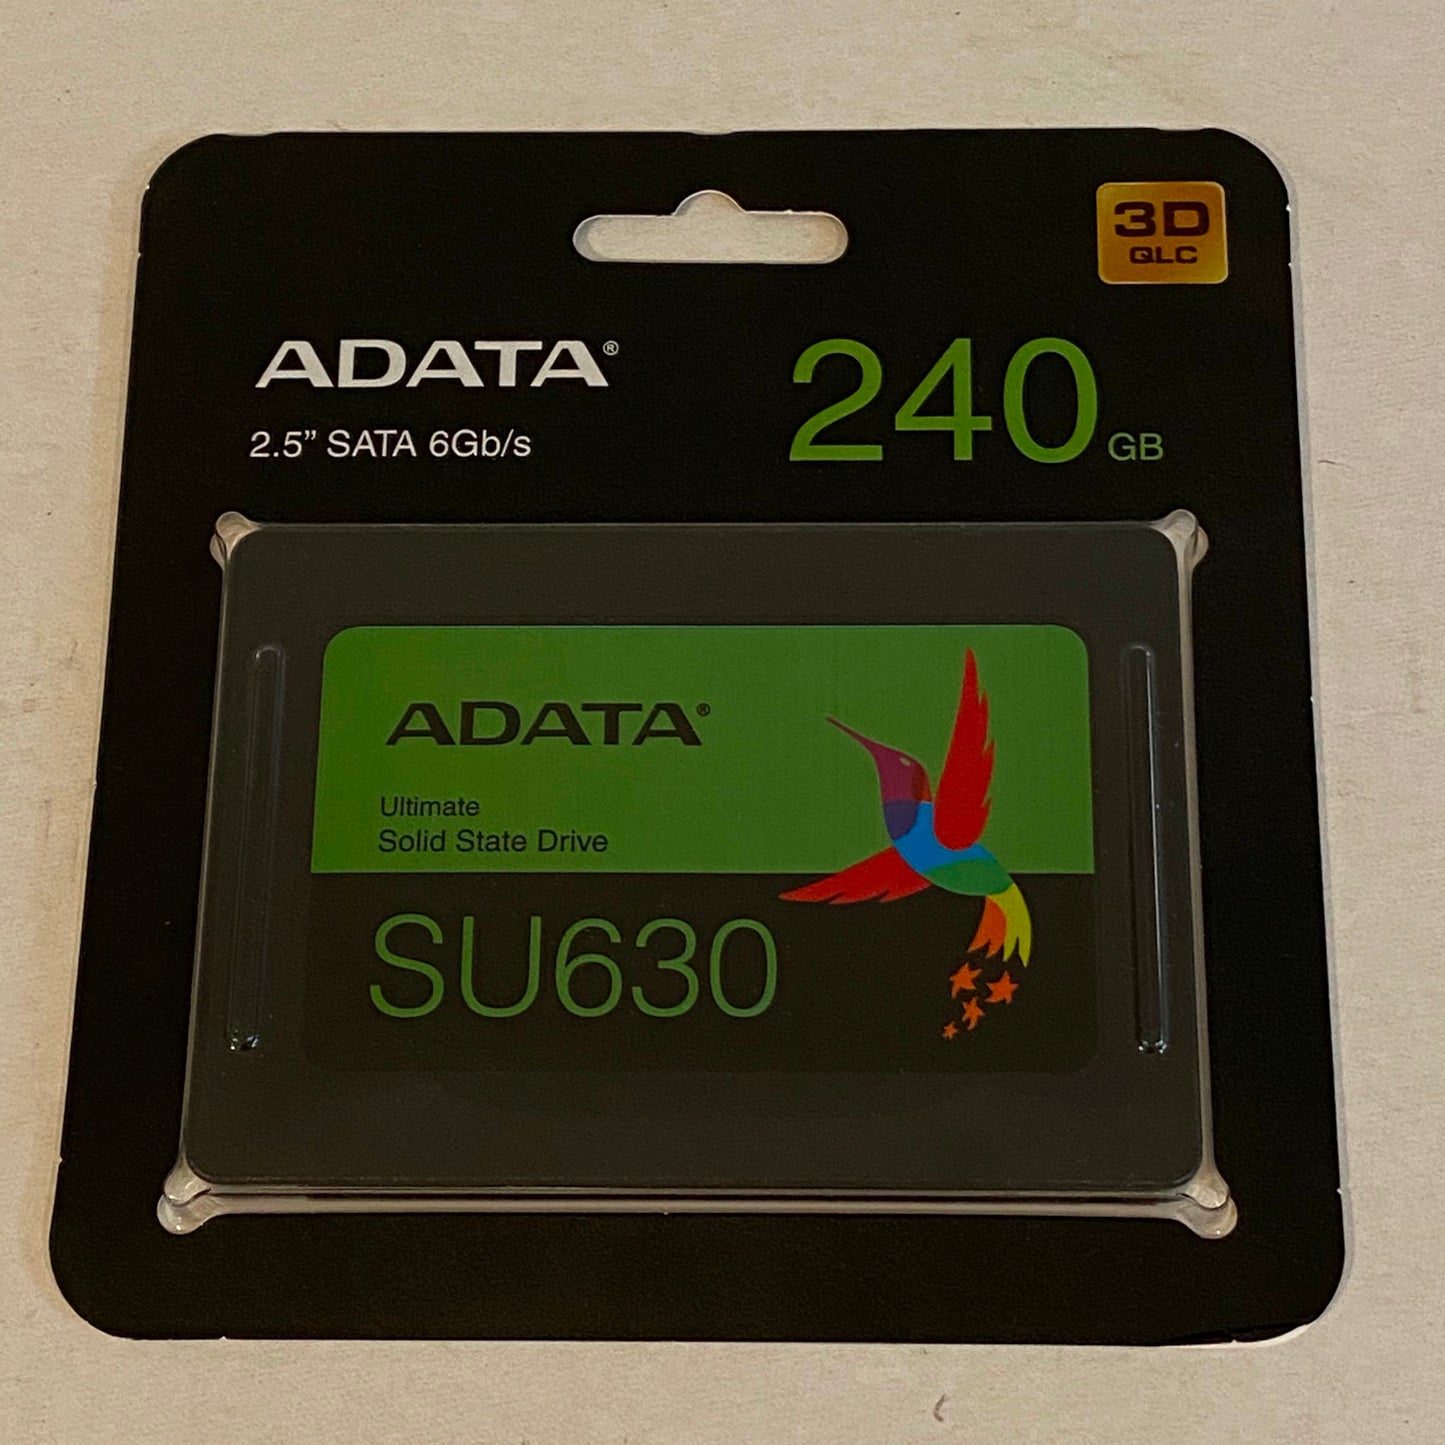 ADATA SU630 240 GB SSD - Pre-loaded with fresh install of Mac OS El Capitan